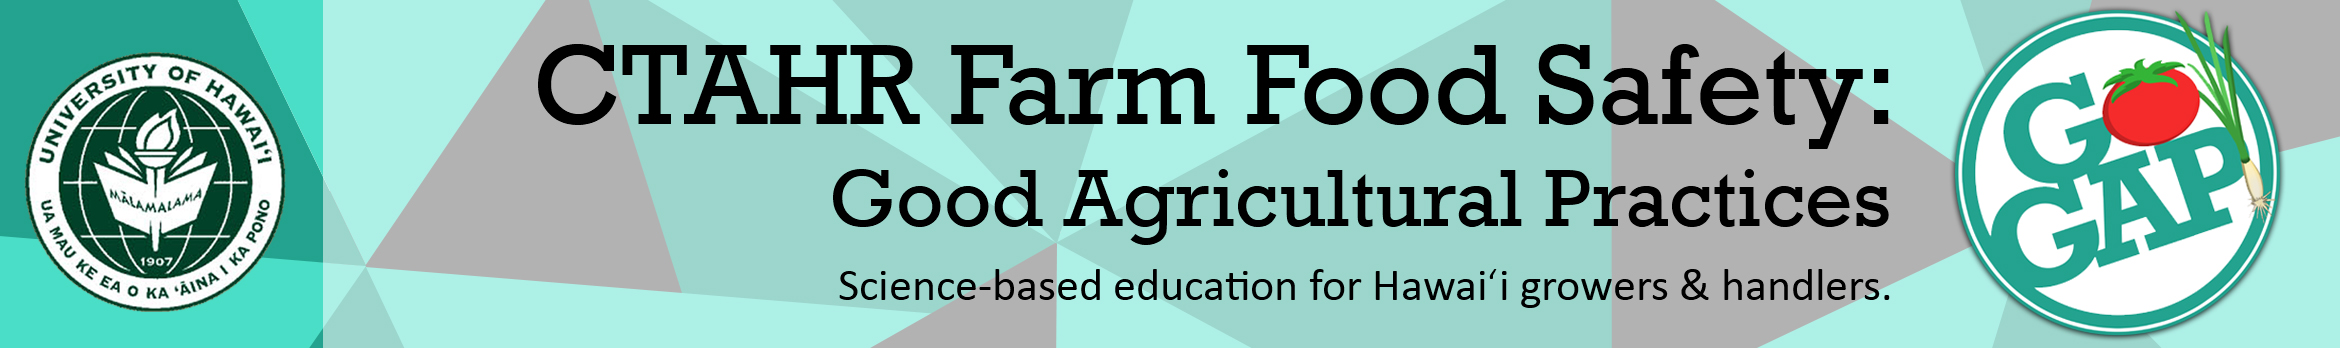 CTAHR Farm Food Safety: Good Agricultural Practices Education